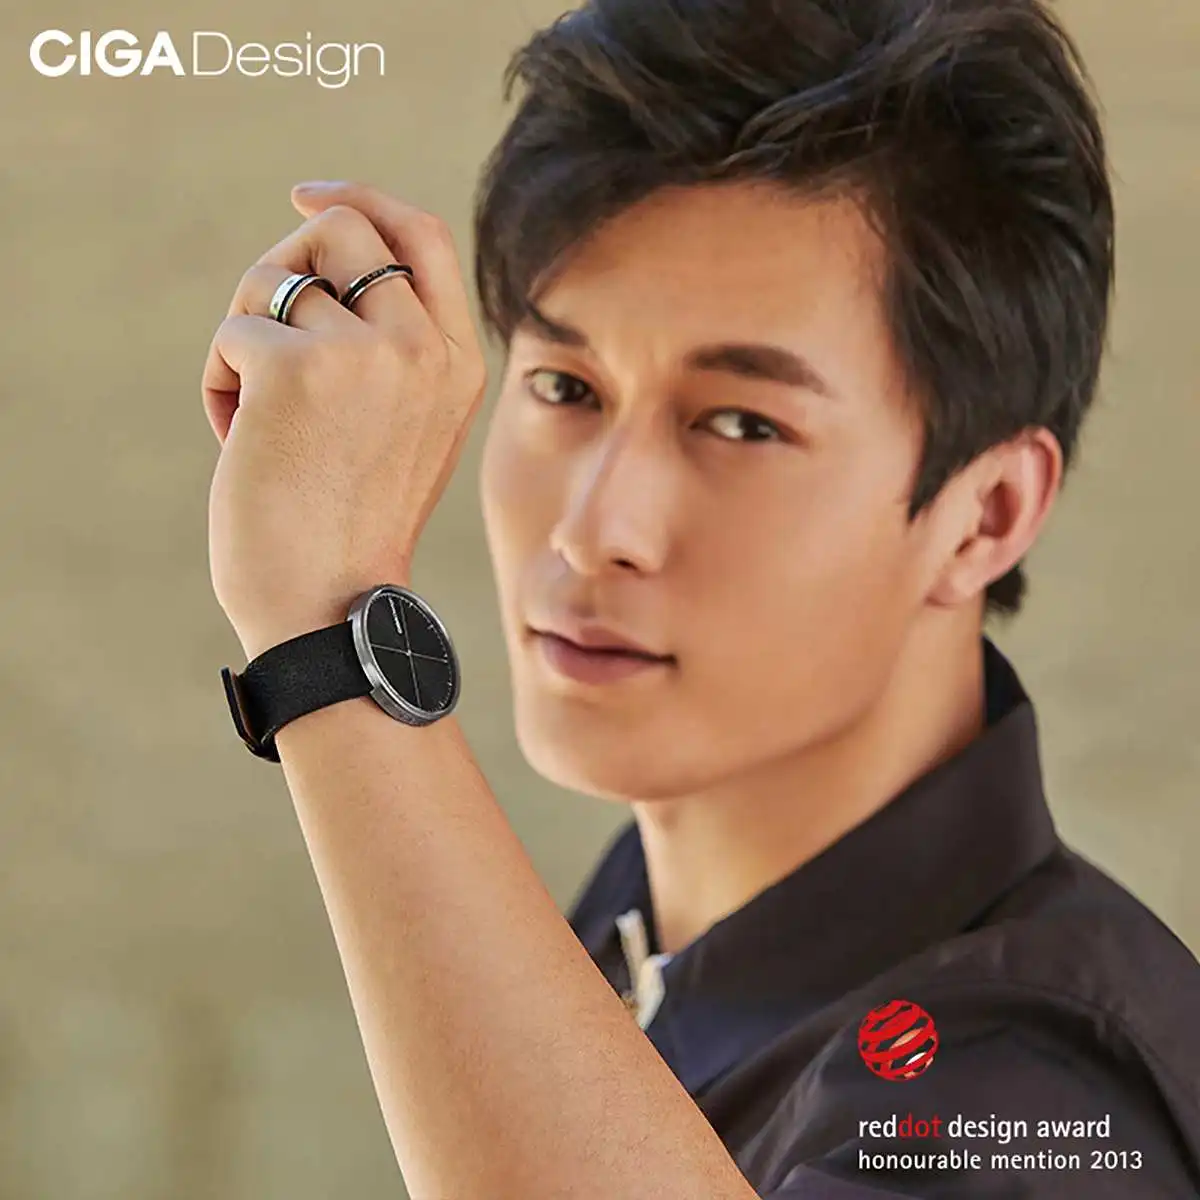 CIGA дизайн Топ Дизайн CIGA часы CIGA кварцевые часы простые кварцевые часы стальной ремень красный горошек дизайн награда часы для мужчин студентов